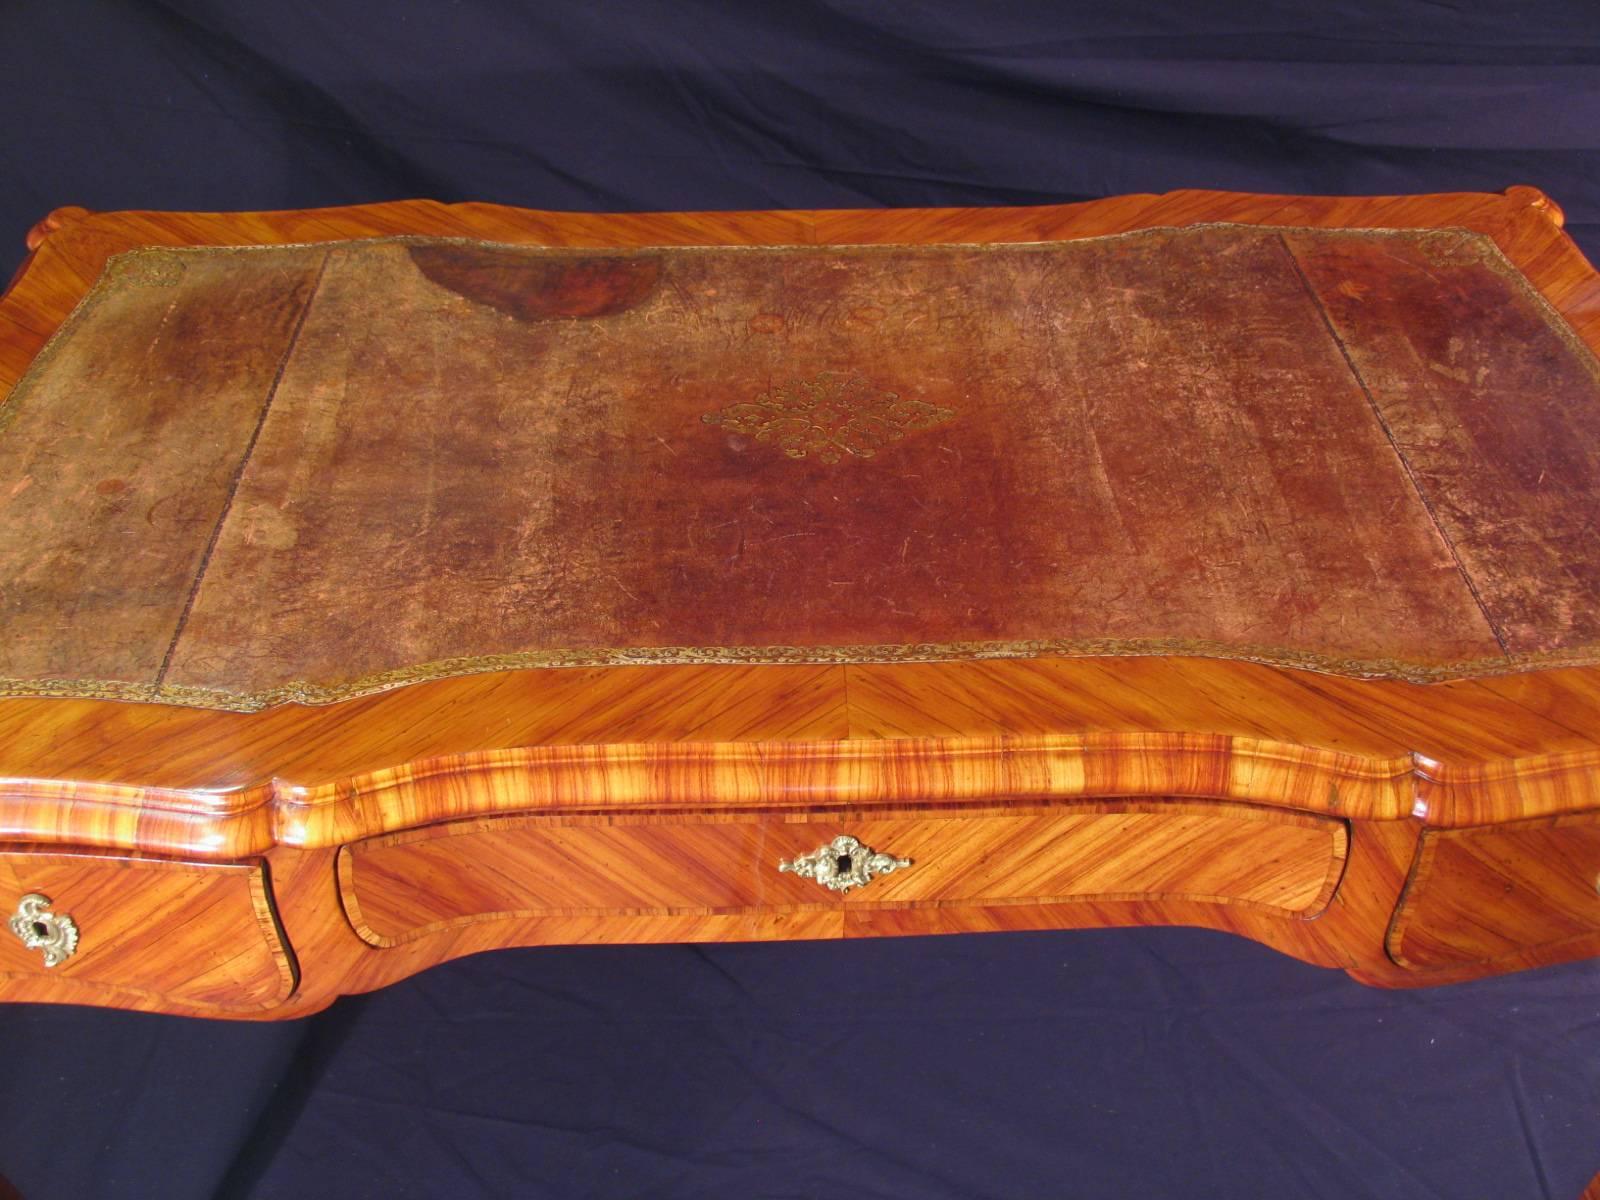 Bureau plat Louis XV, France, 18e-19e siècle. 
Le bureau plat est orné d'un beau placage de bois de rose et des ferrures d'origine en bronze. La surface d'écriture est doublée d'une surface en cuir doré. 
Le bureau plat est livré refini. Il est